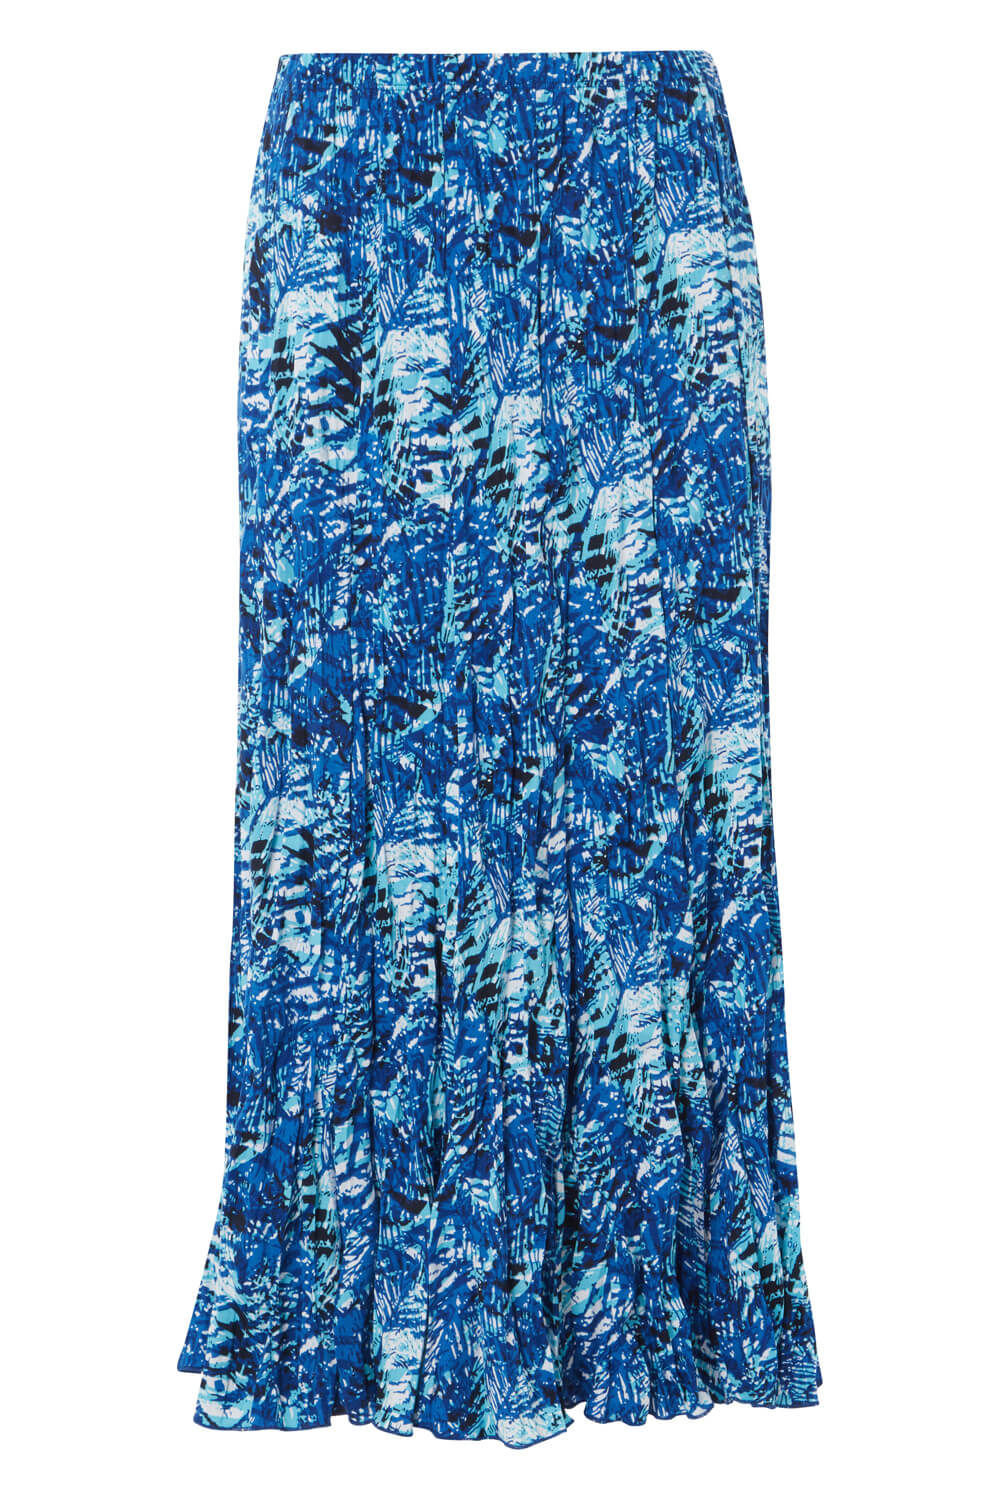 Tropical Print Crinkle Midi Skirt in Blue - Roman Originals UK